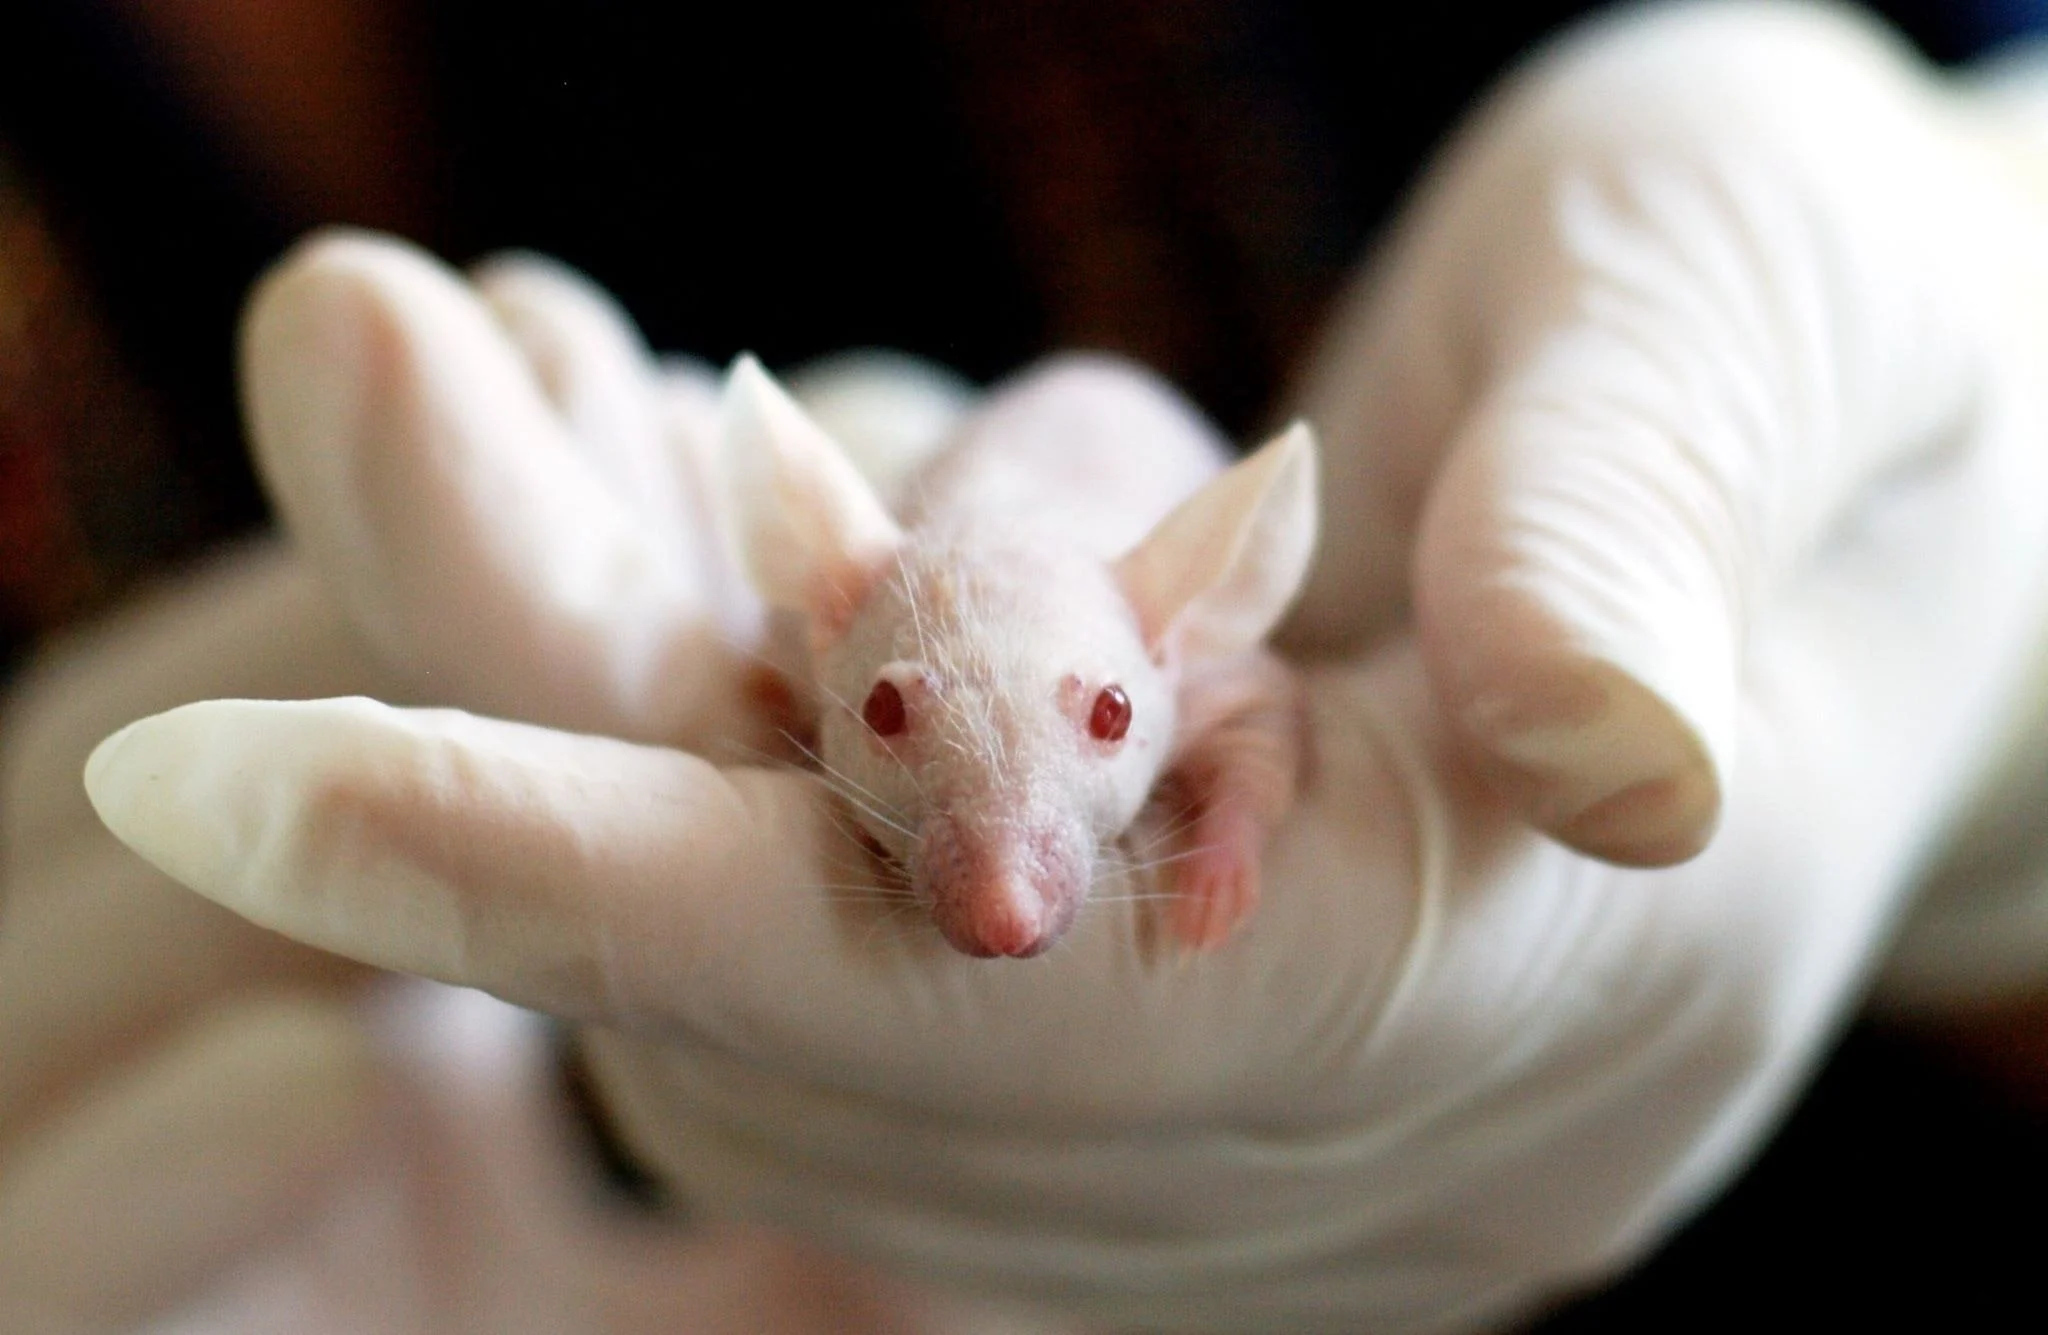 Δημιουργήθηκε από βλαστοκύτταρα συνθετικό έμβρυο ποντικού με εγκέφαλο και καρδιά που χτυπάει